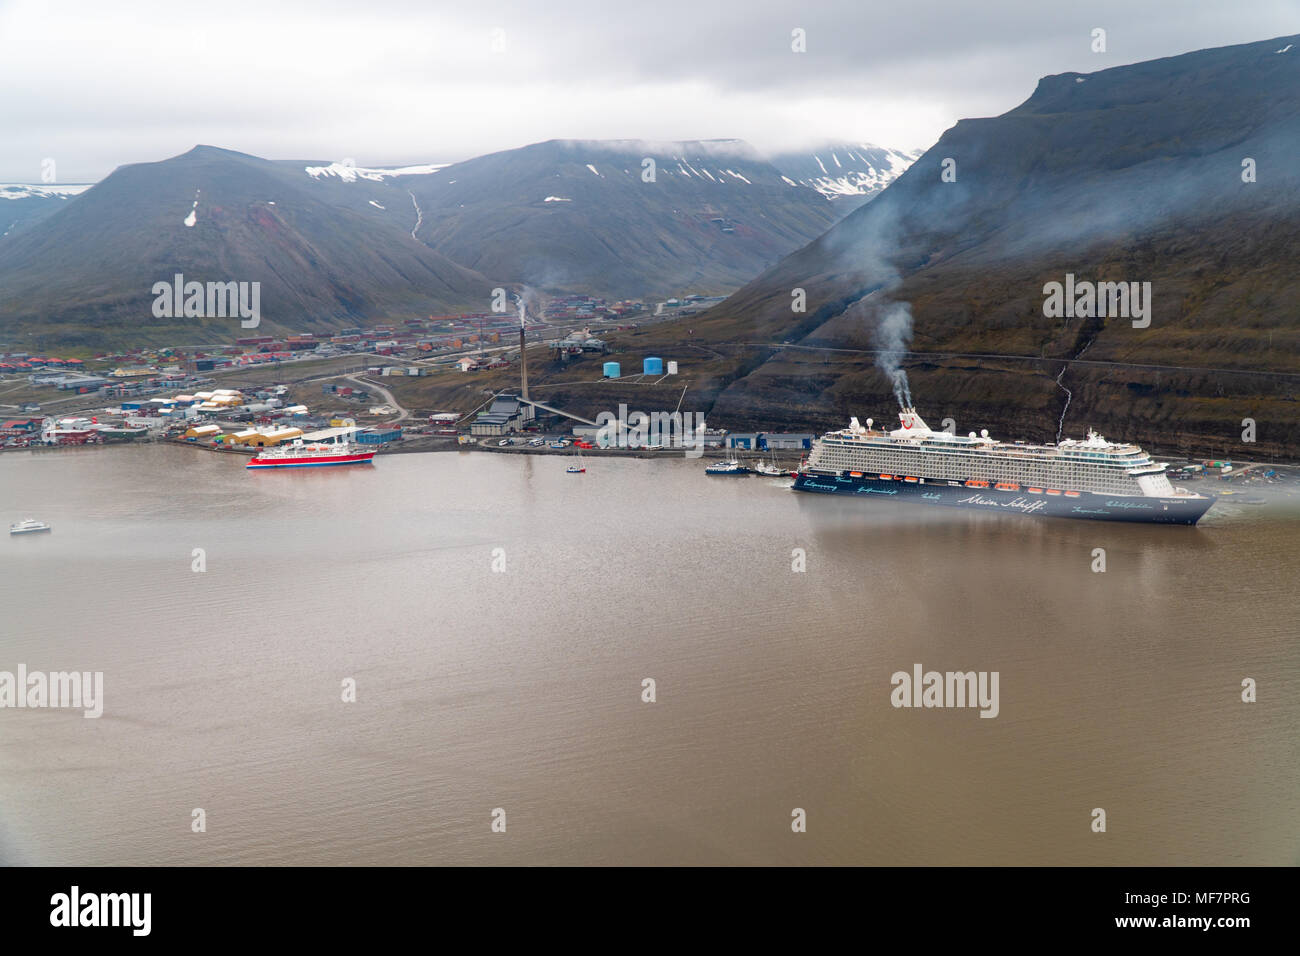 Photographie aérienne de la ville de Longyearbyen sur le Spitzberg, archipel du Svalbard, Norvège Banque D'Images